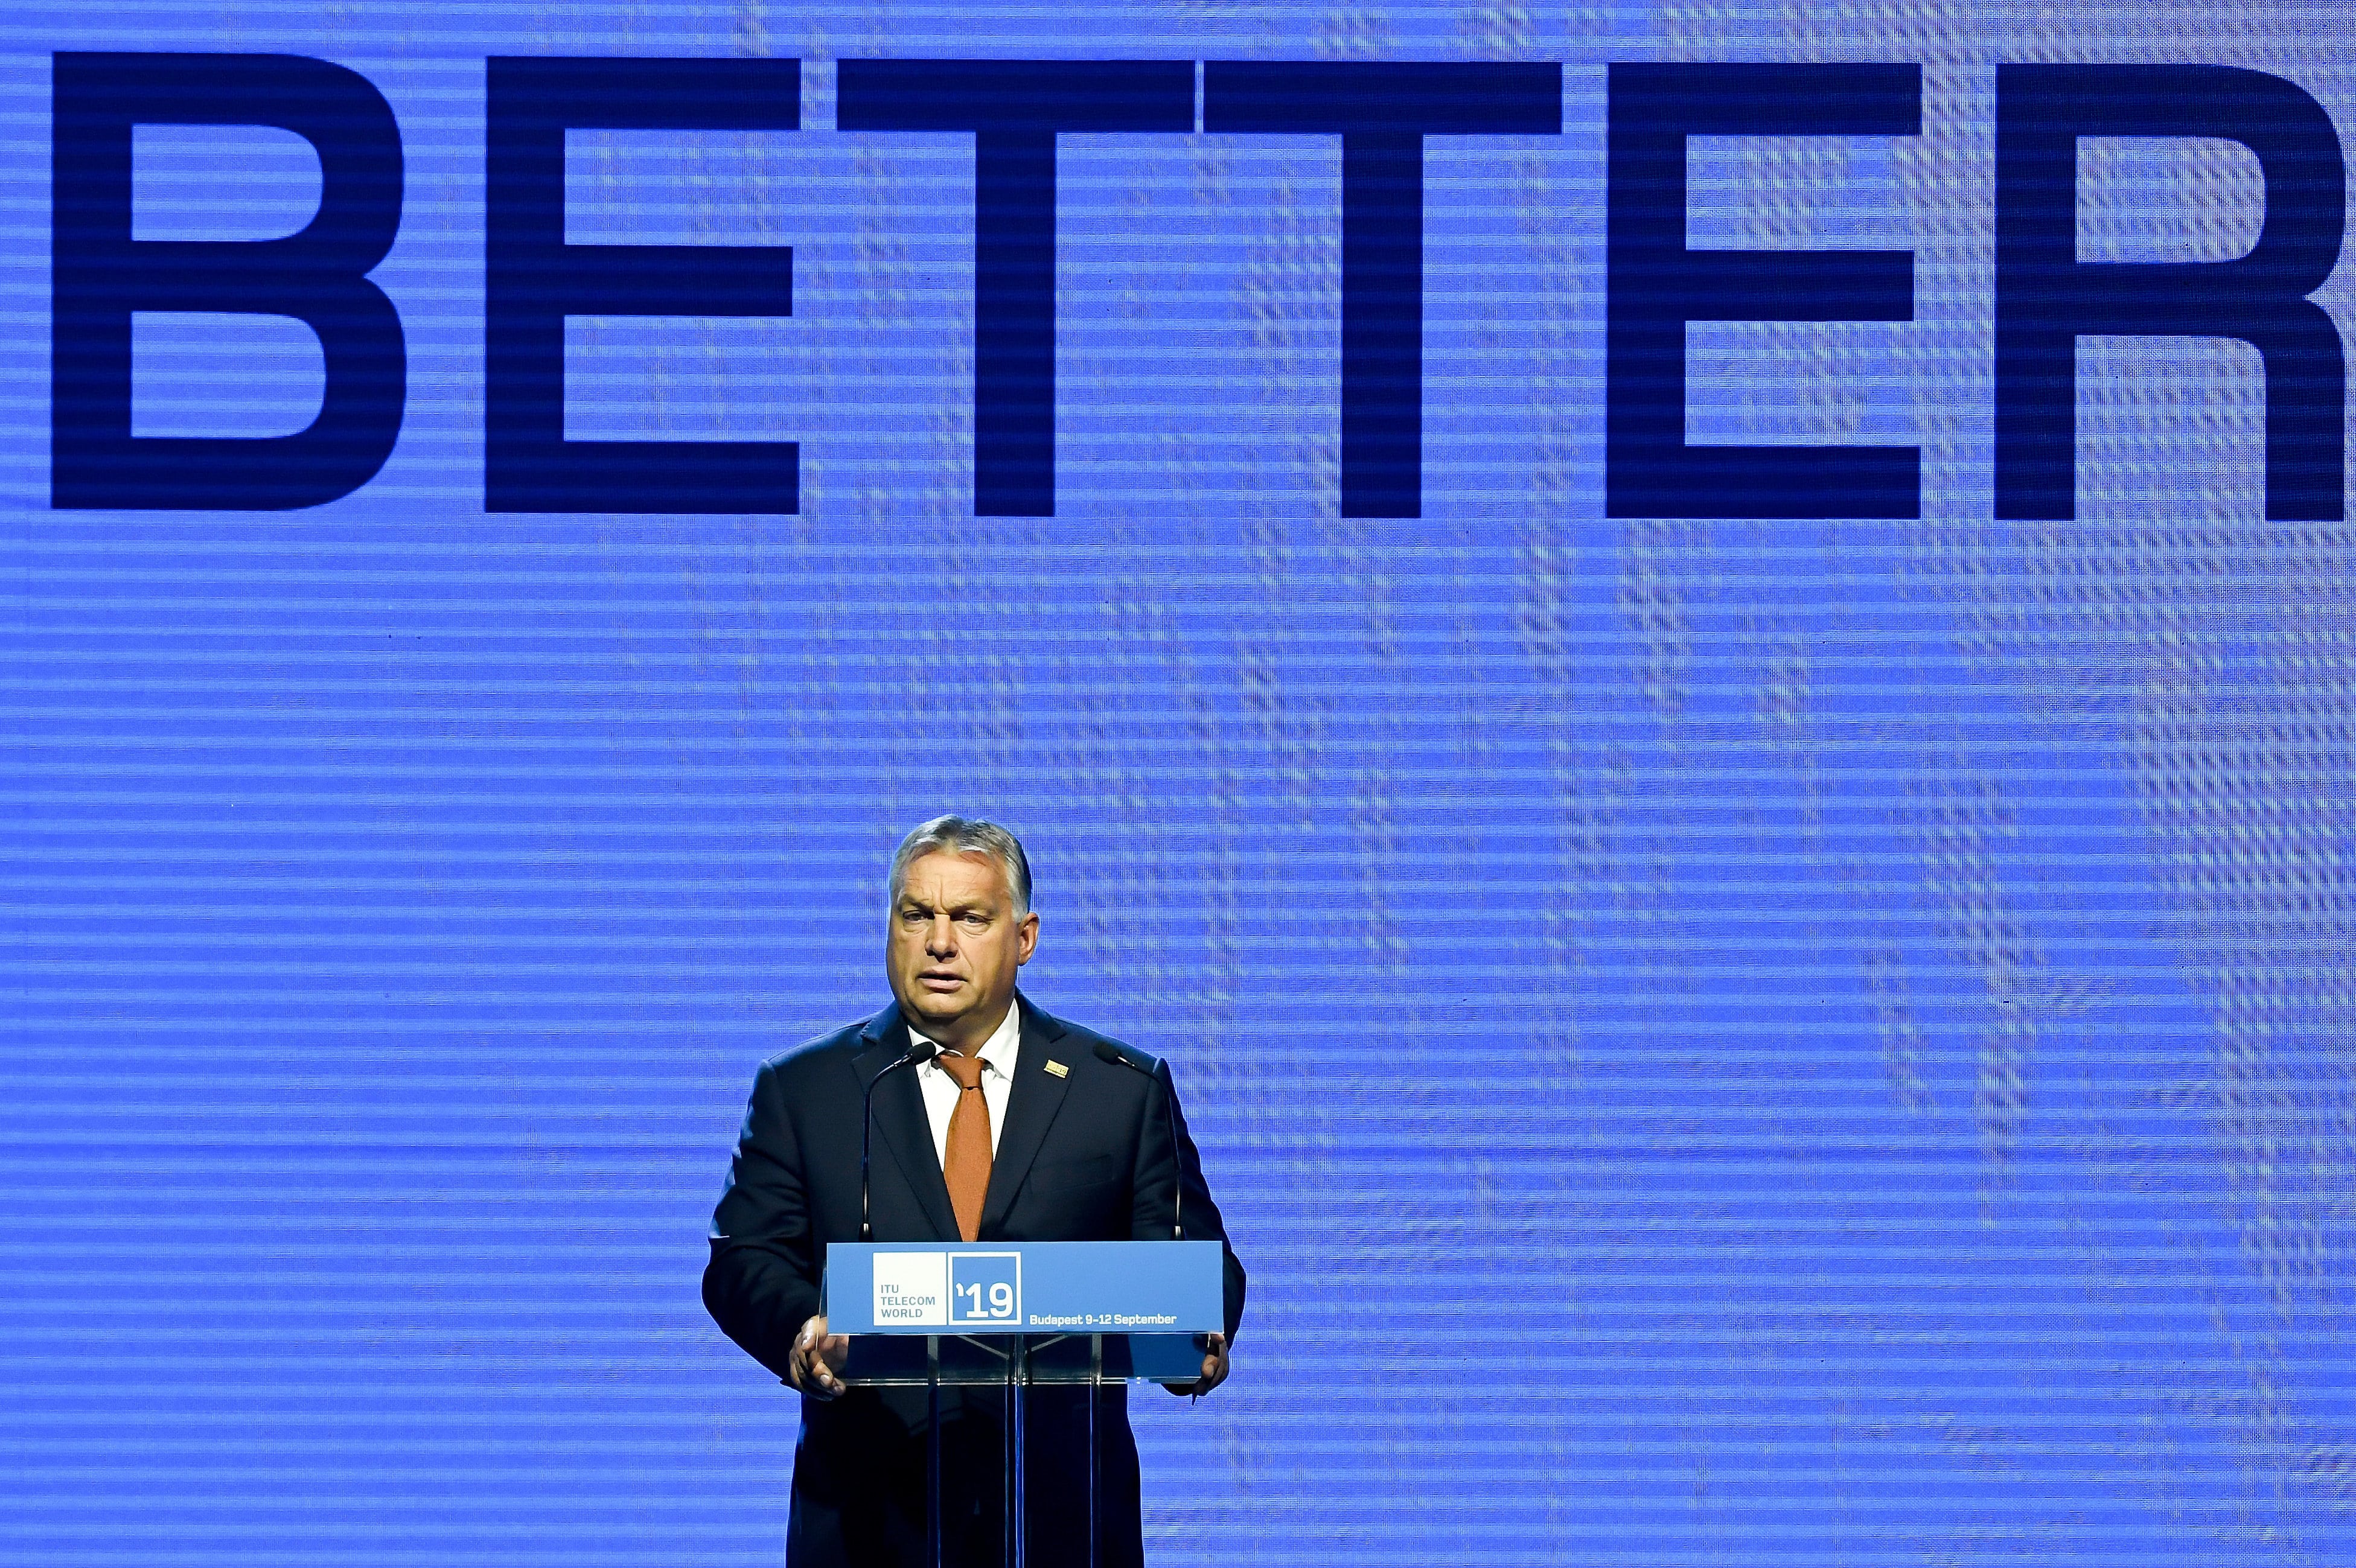 Premierul Orbán deschide conferința mondială ITU Telecom la Budapesta